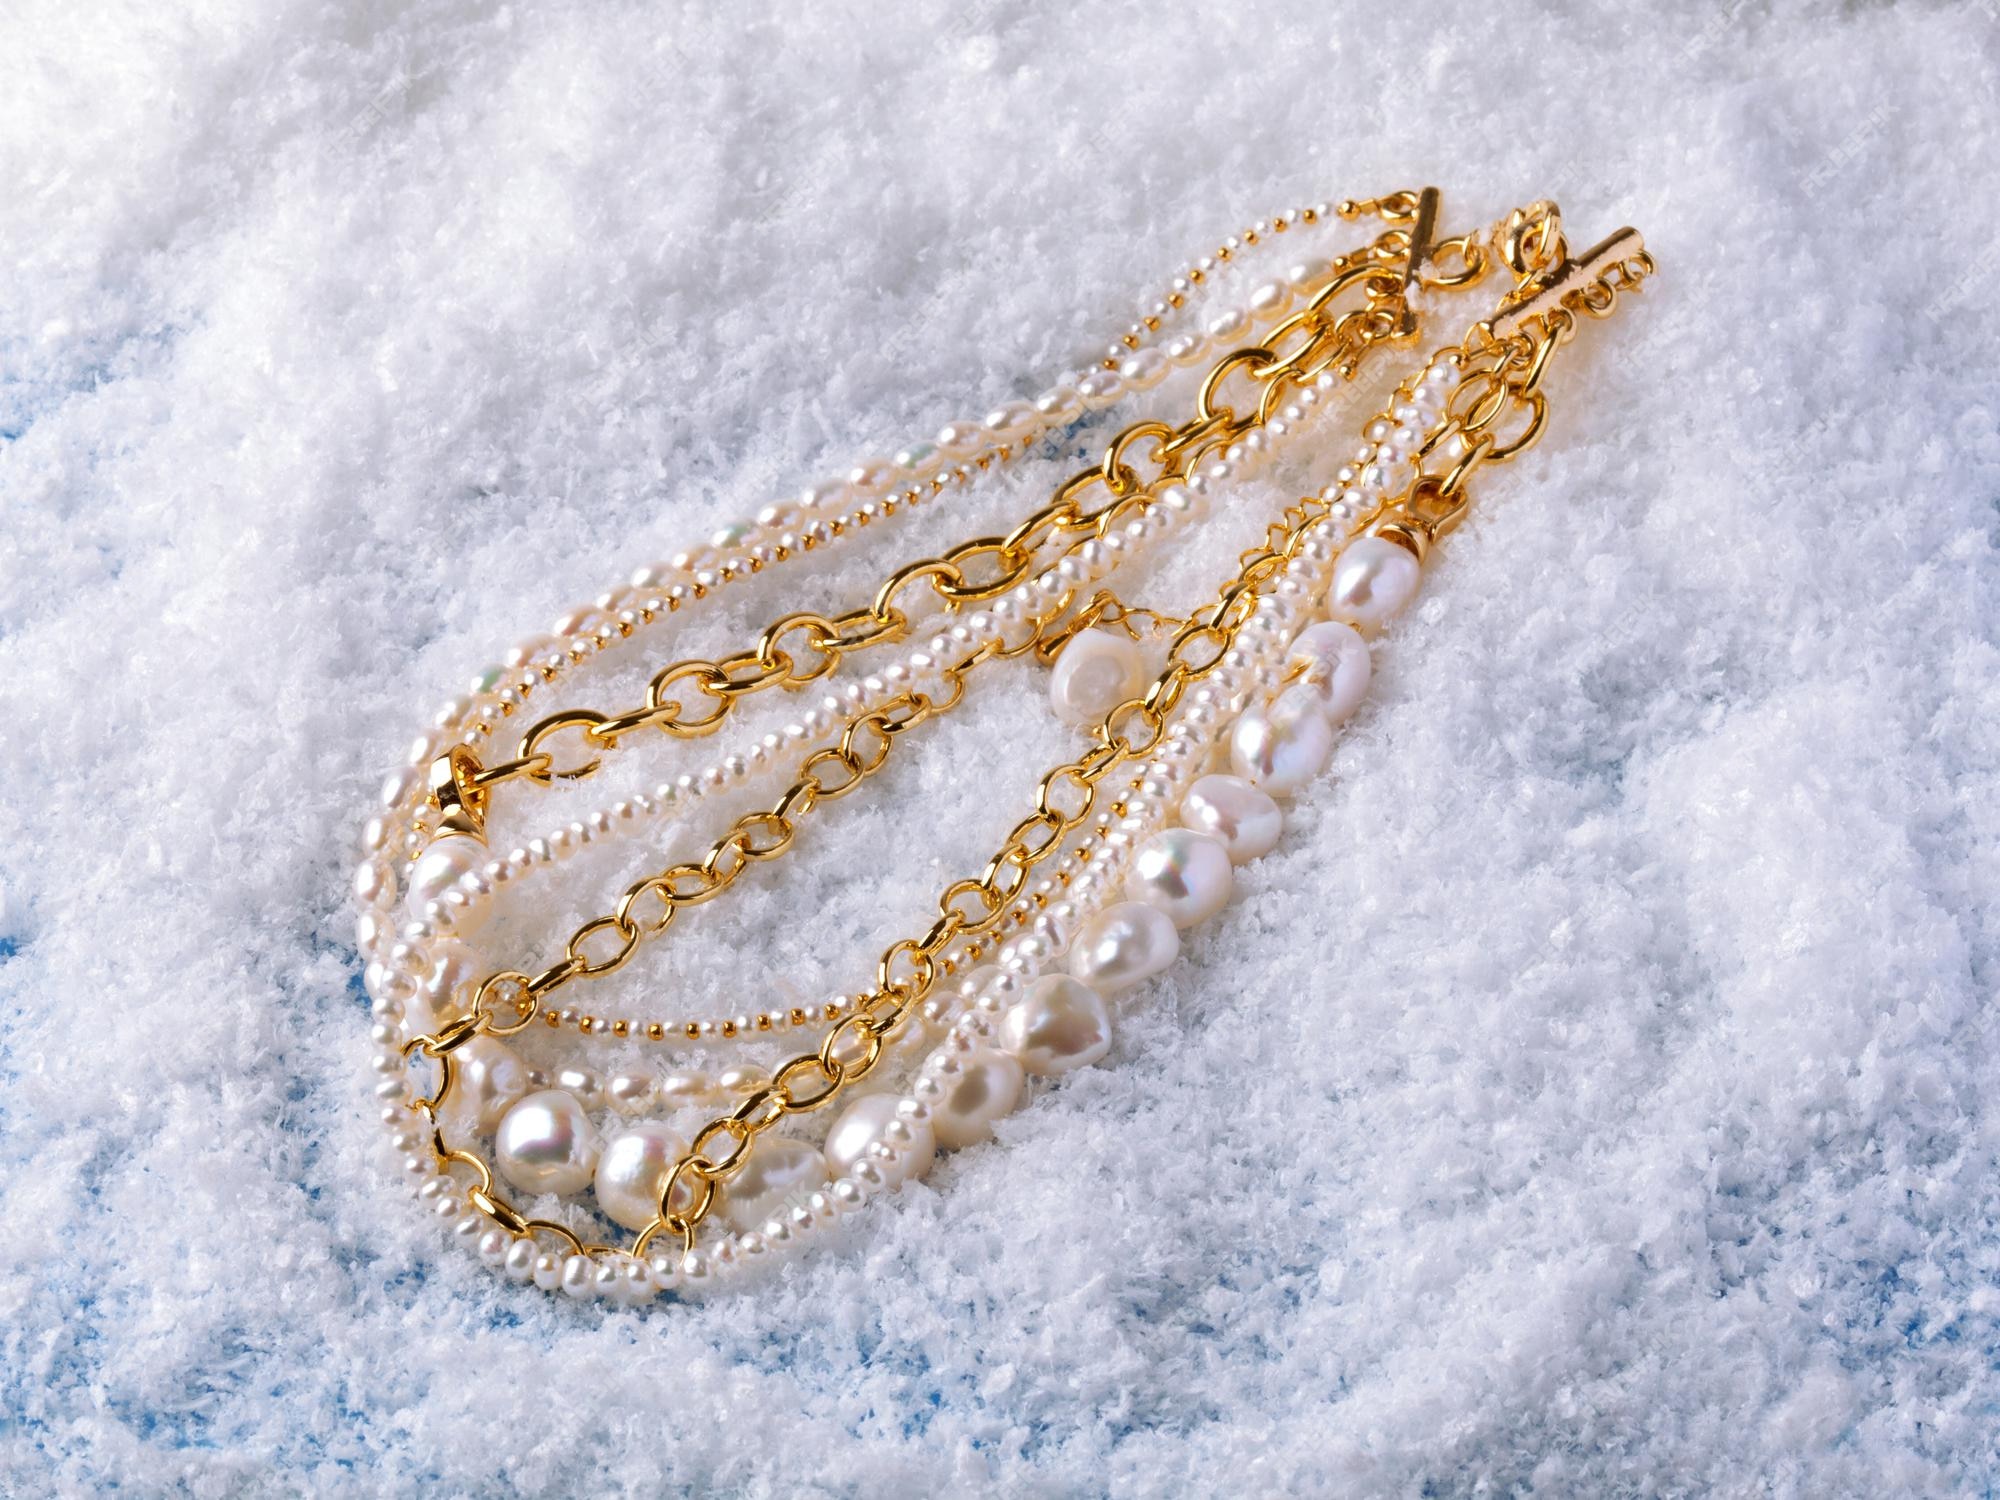 Collares de oro y perlas barrocas elegantes lujo fondo de nieve blanca. fotografía de cerca | Foto Premium